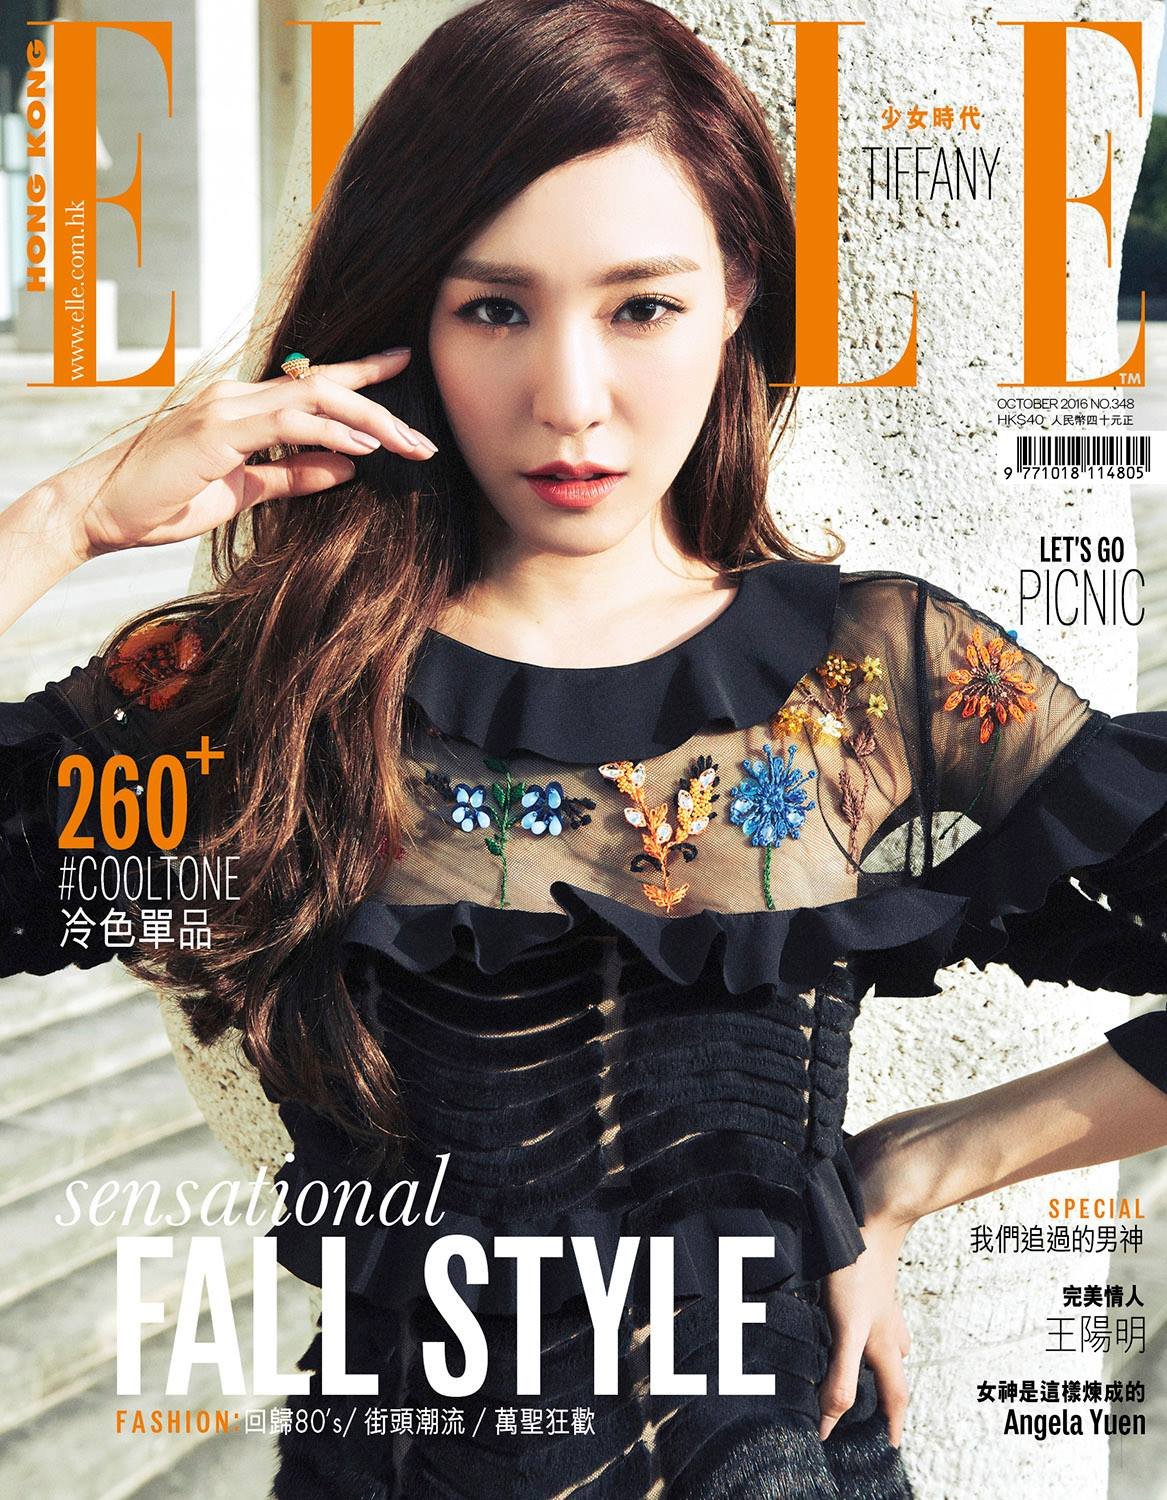 [PIC][07-07-2016]Tiffany xuất hiện trên trang bìa tháng 10 của tạp chí "ELLE HONGKONG" GGSu_wpmnD-3000x3000